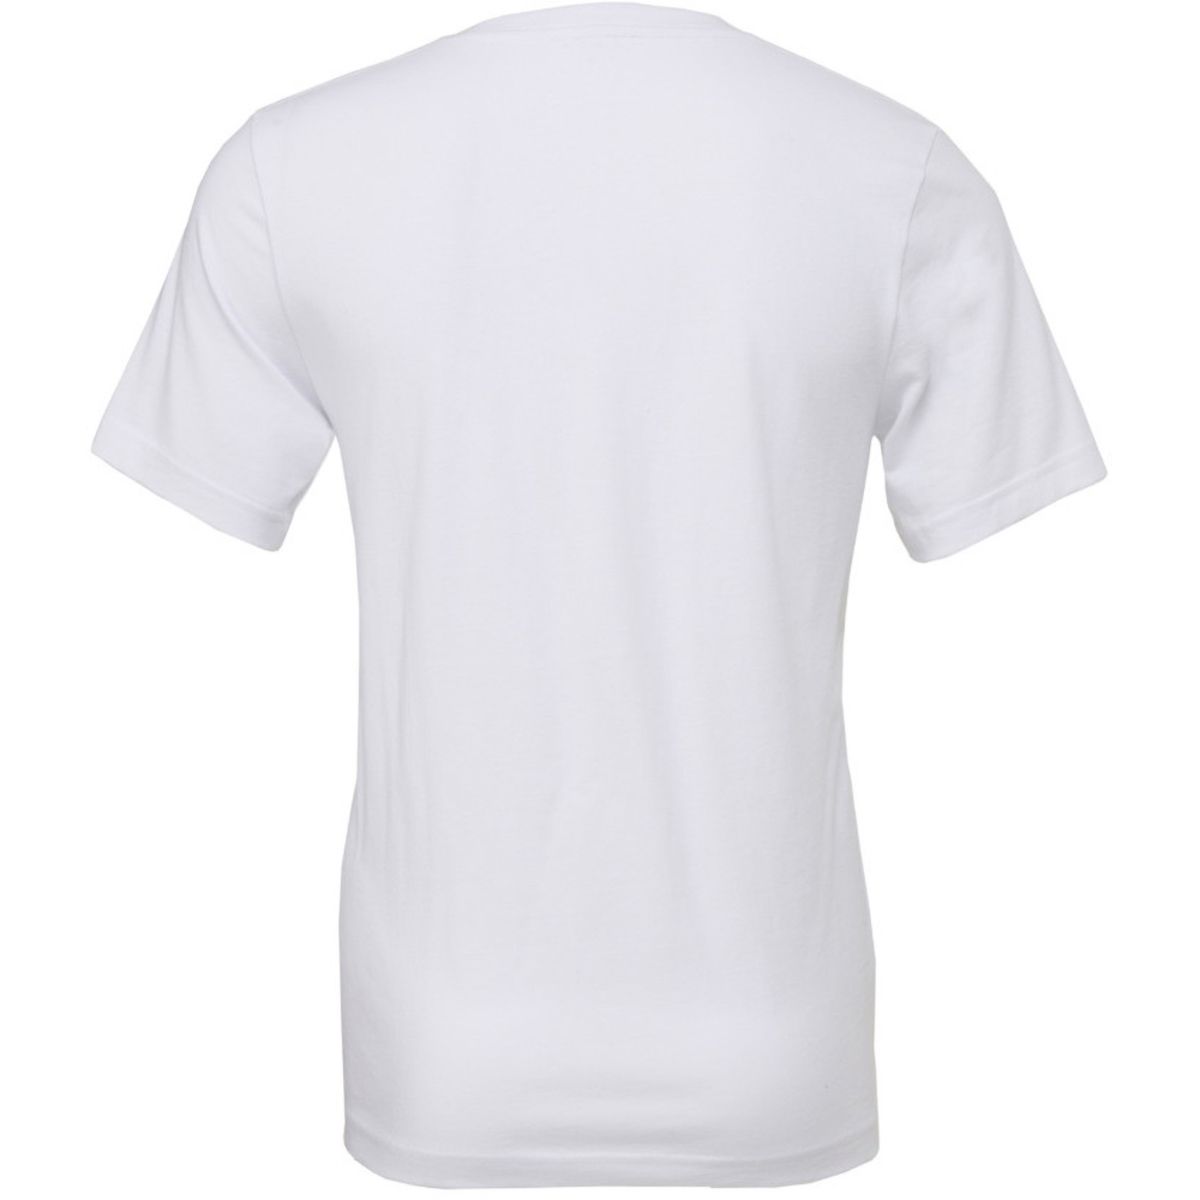 Мужская футболка из холщового джерси с коротким рукавом и v-образным вырезом Bella+Canvas футболка из джерси с коротким рукавом bella canvas белый